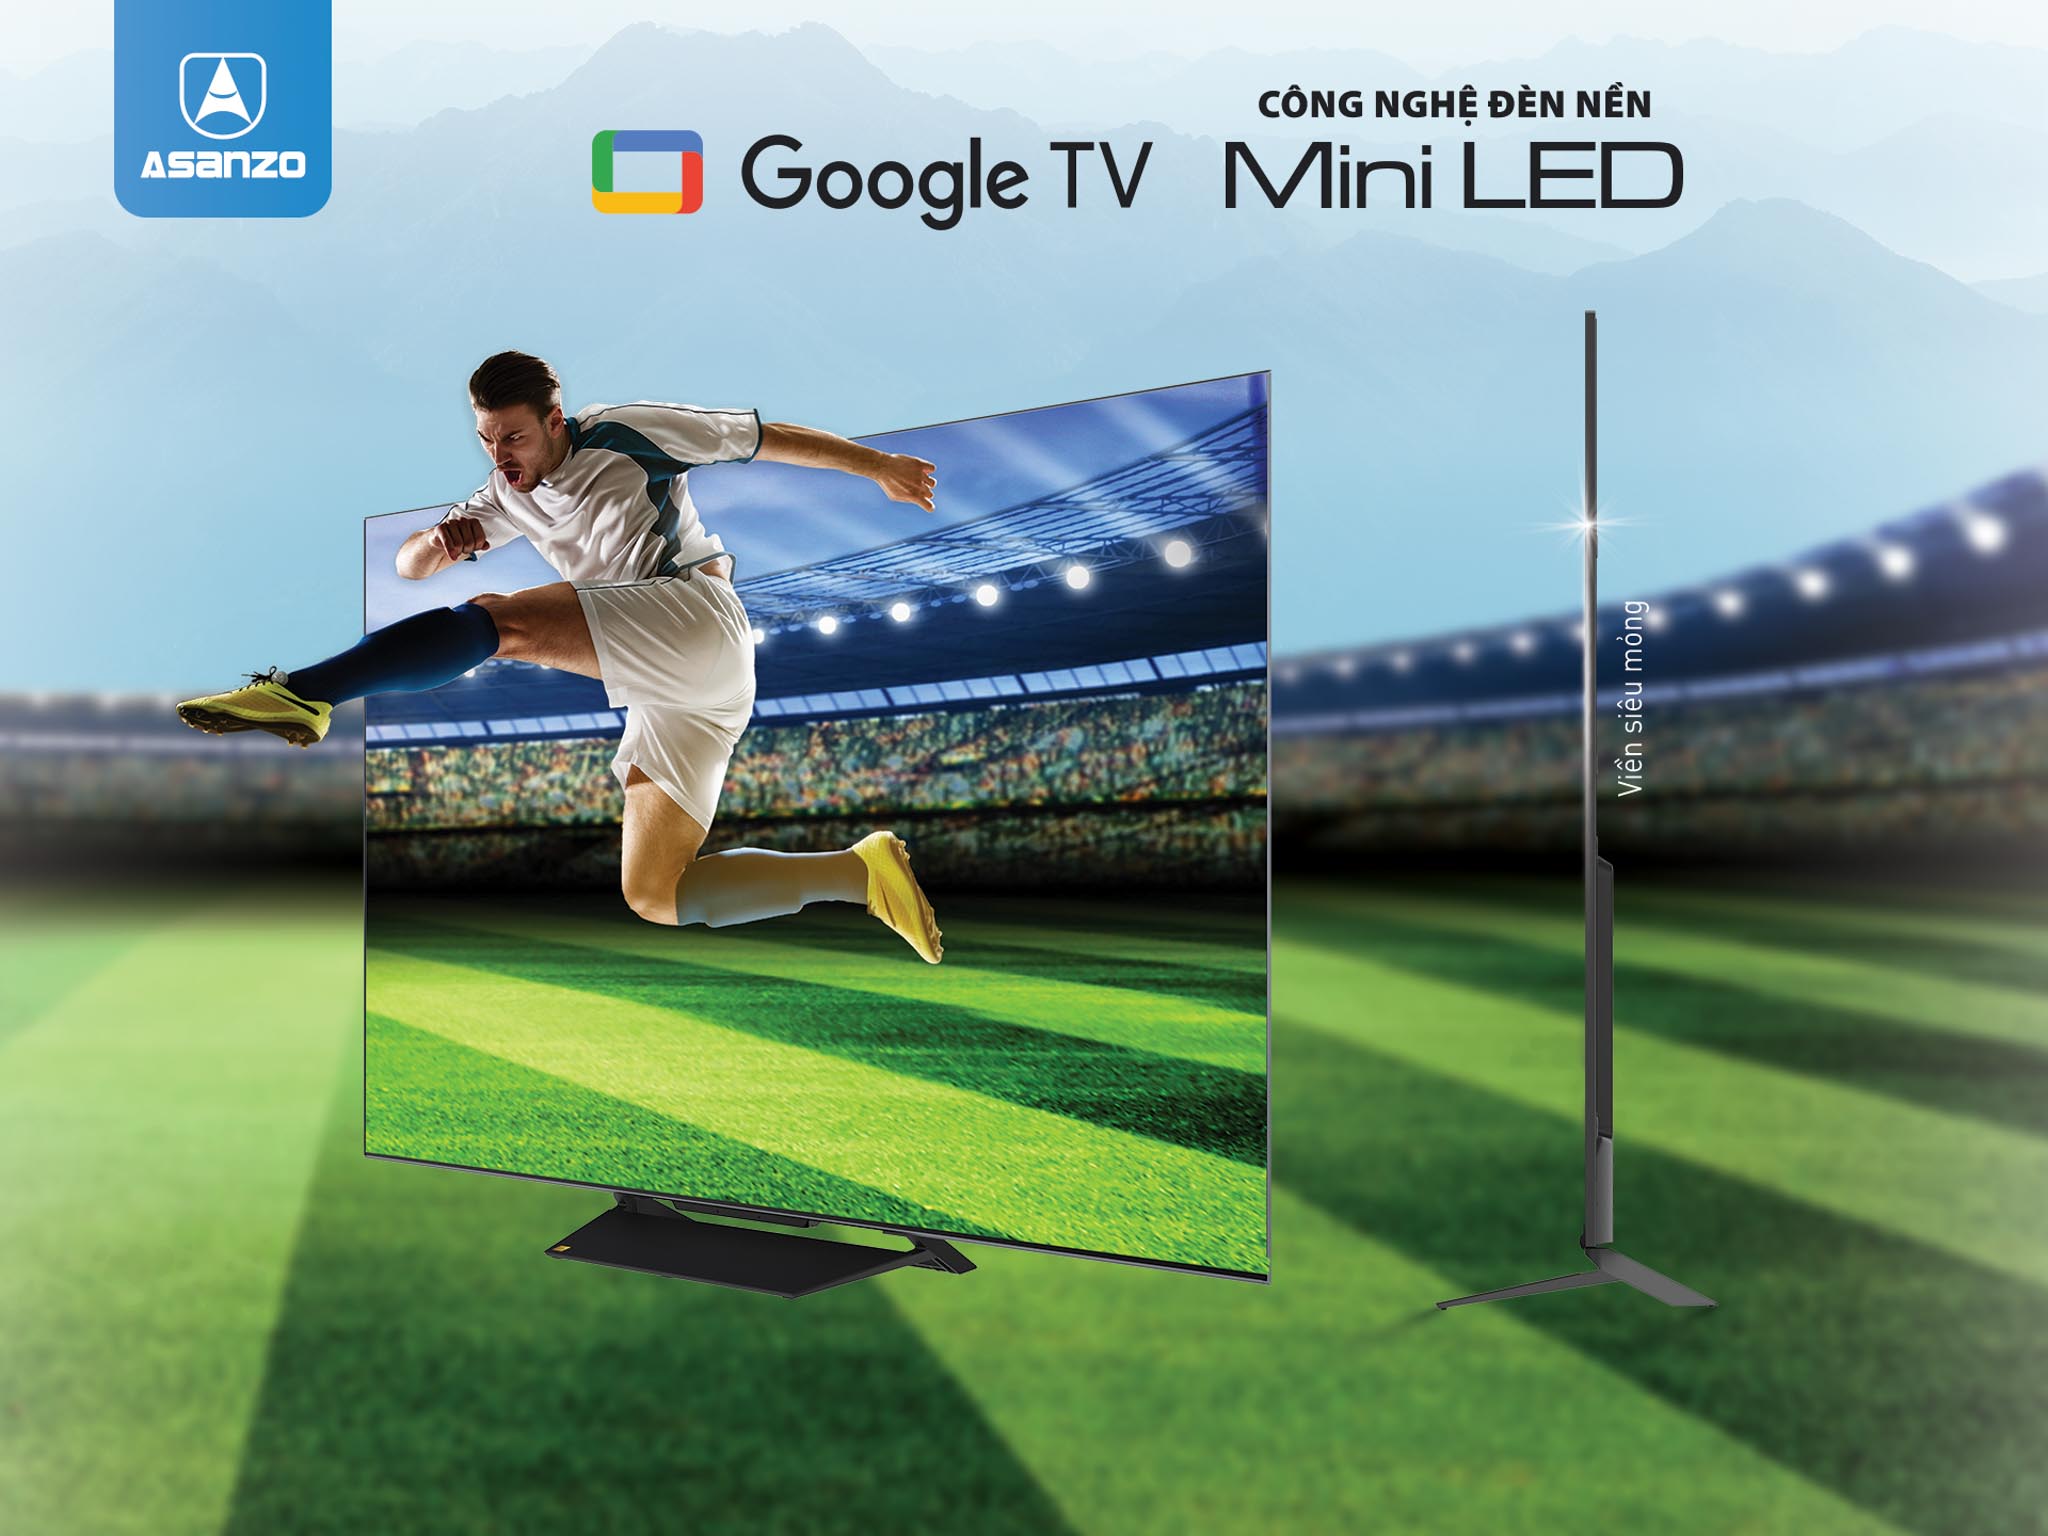 ASANZO ra mắt Google TV sở hữu công nghệ đèn nền Mini LED ấn tượng